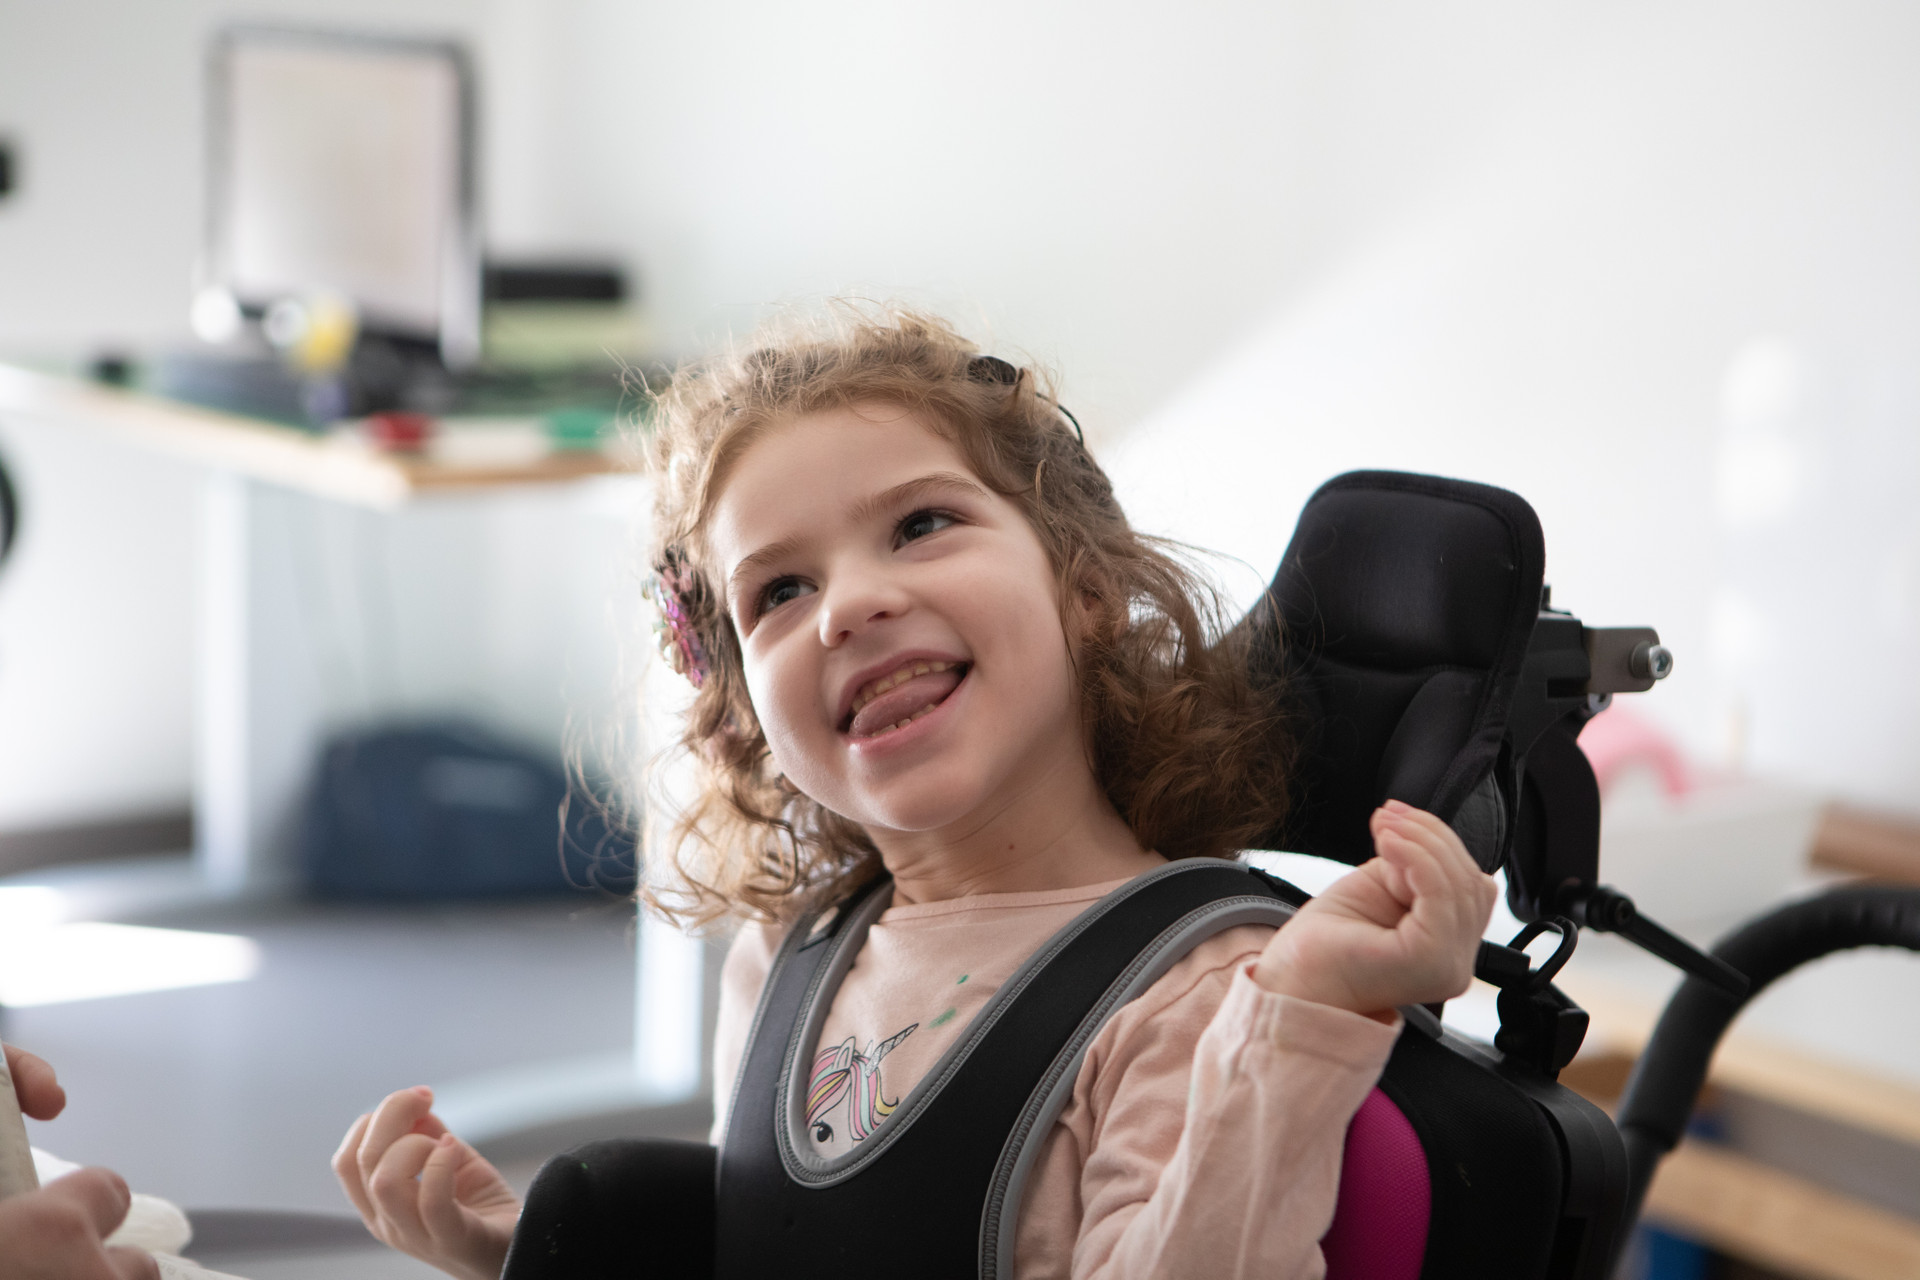 Bambina con disabilità visiva, uditiva e motoria che sorride